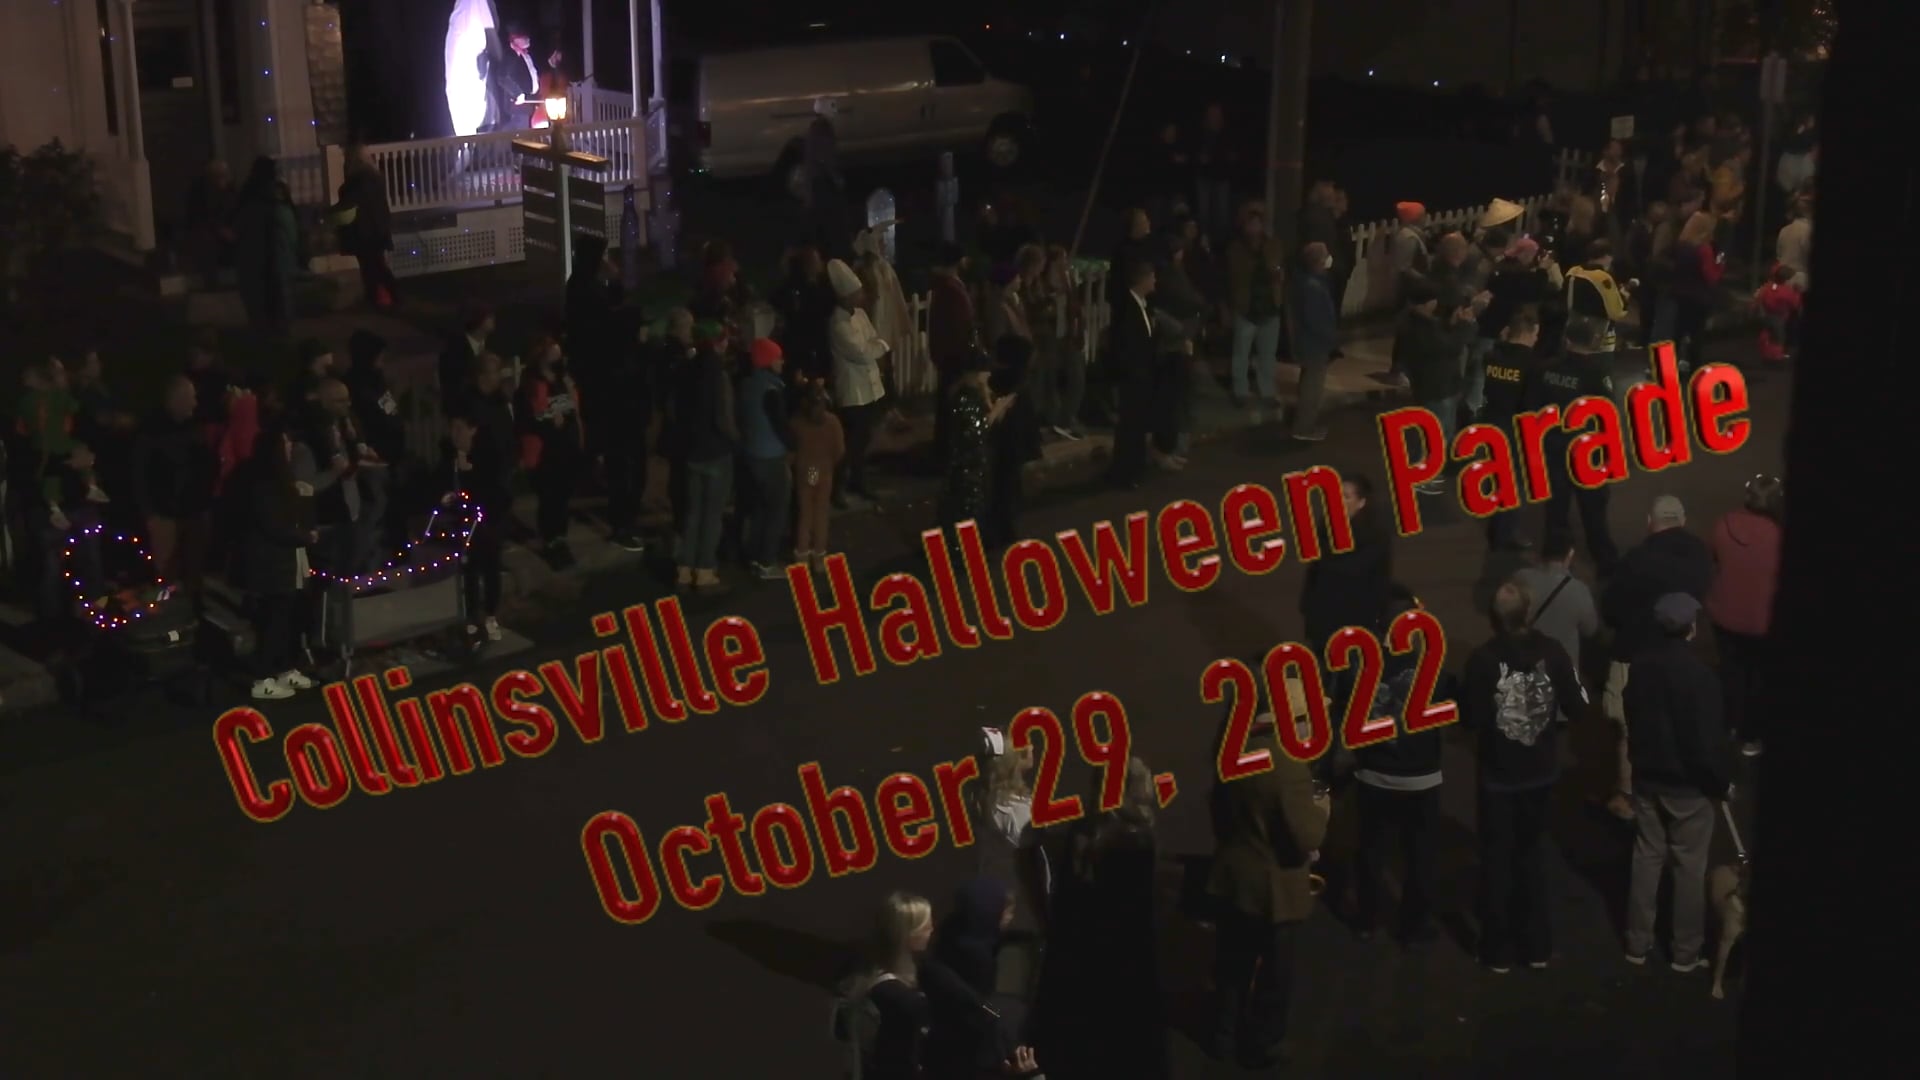 Collinsville Halloween Parade 2022 on Vimeo